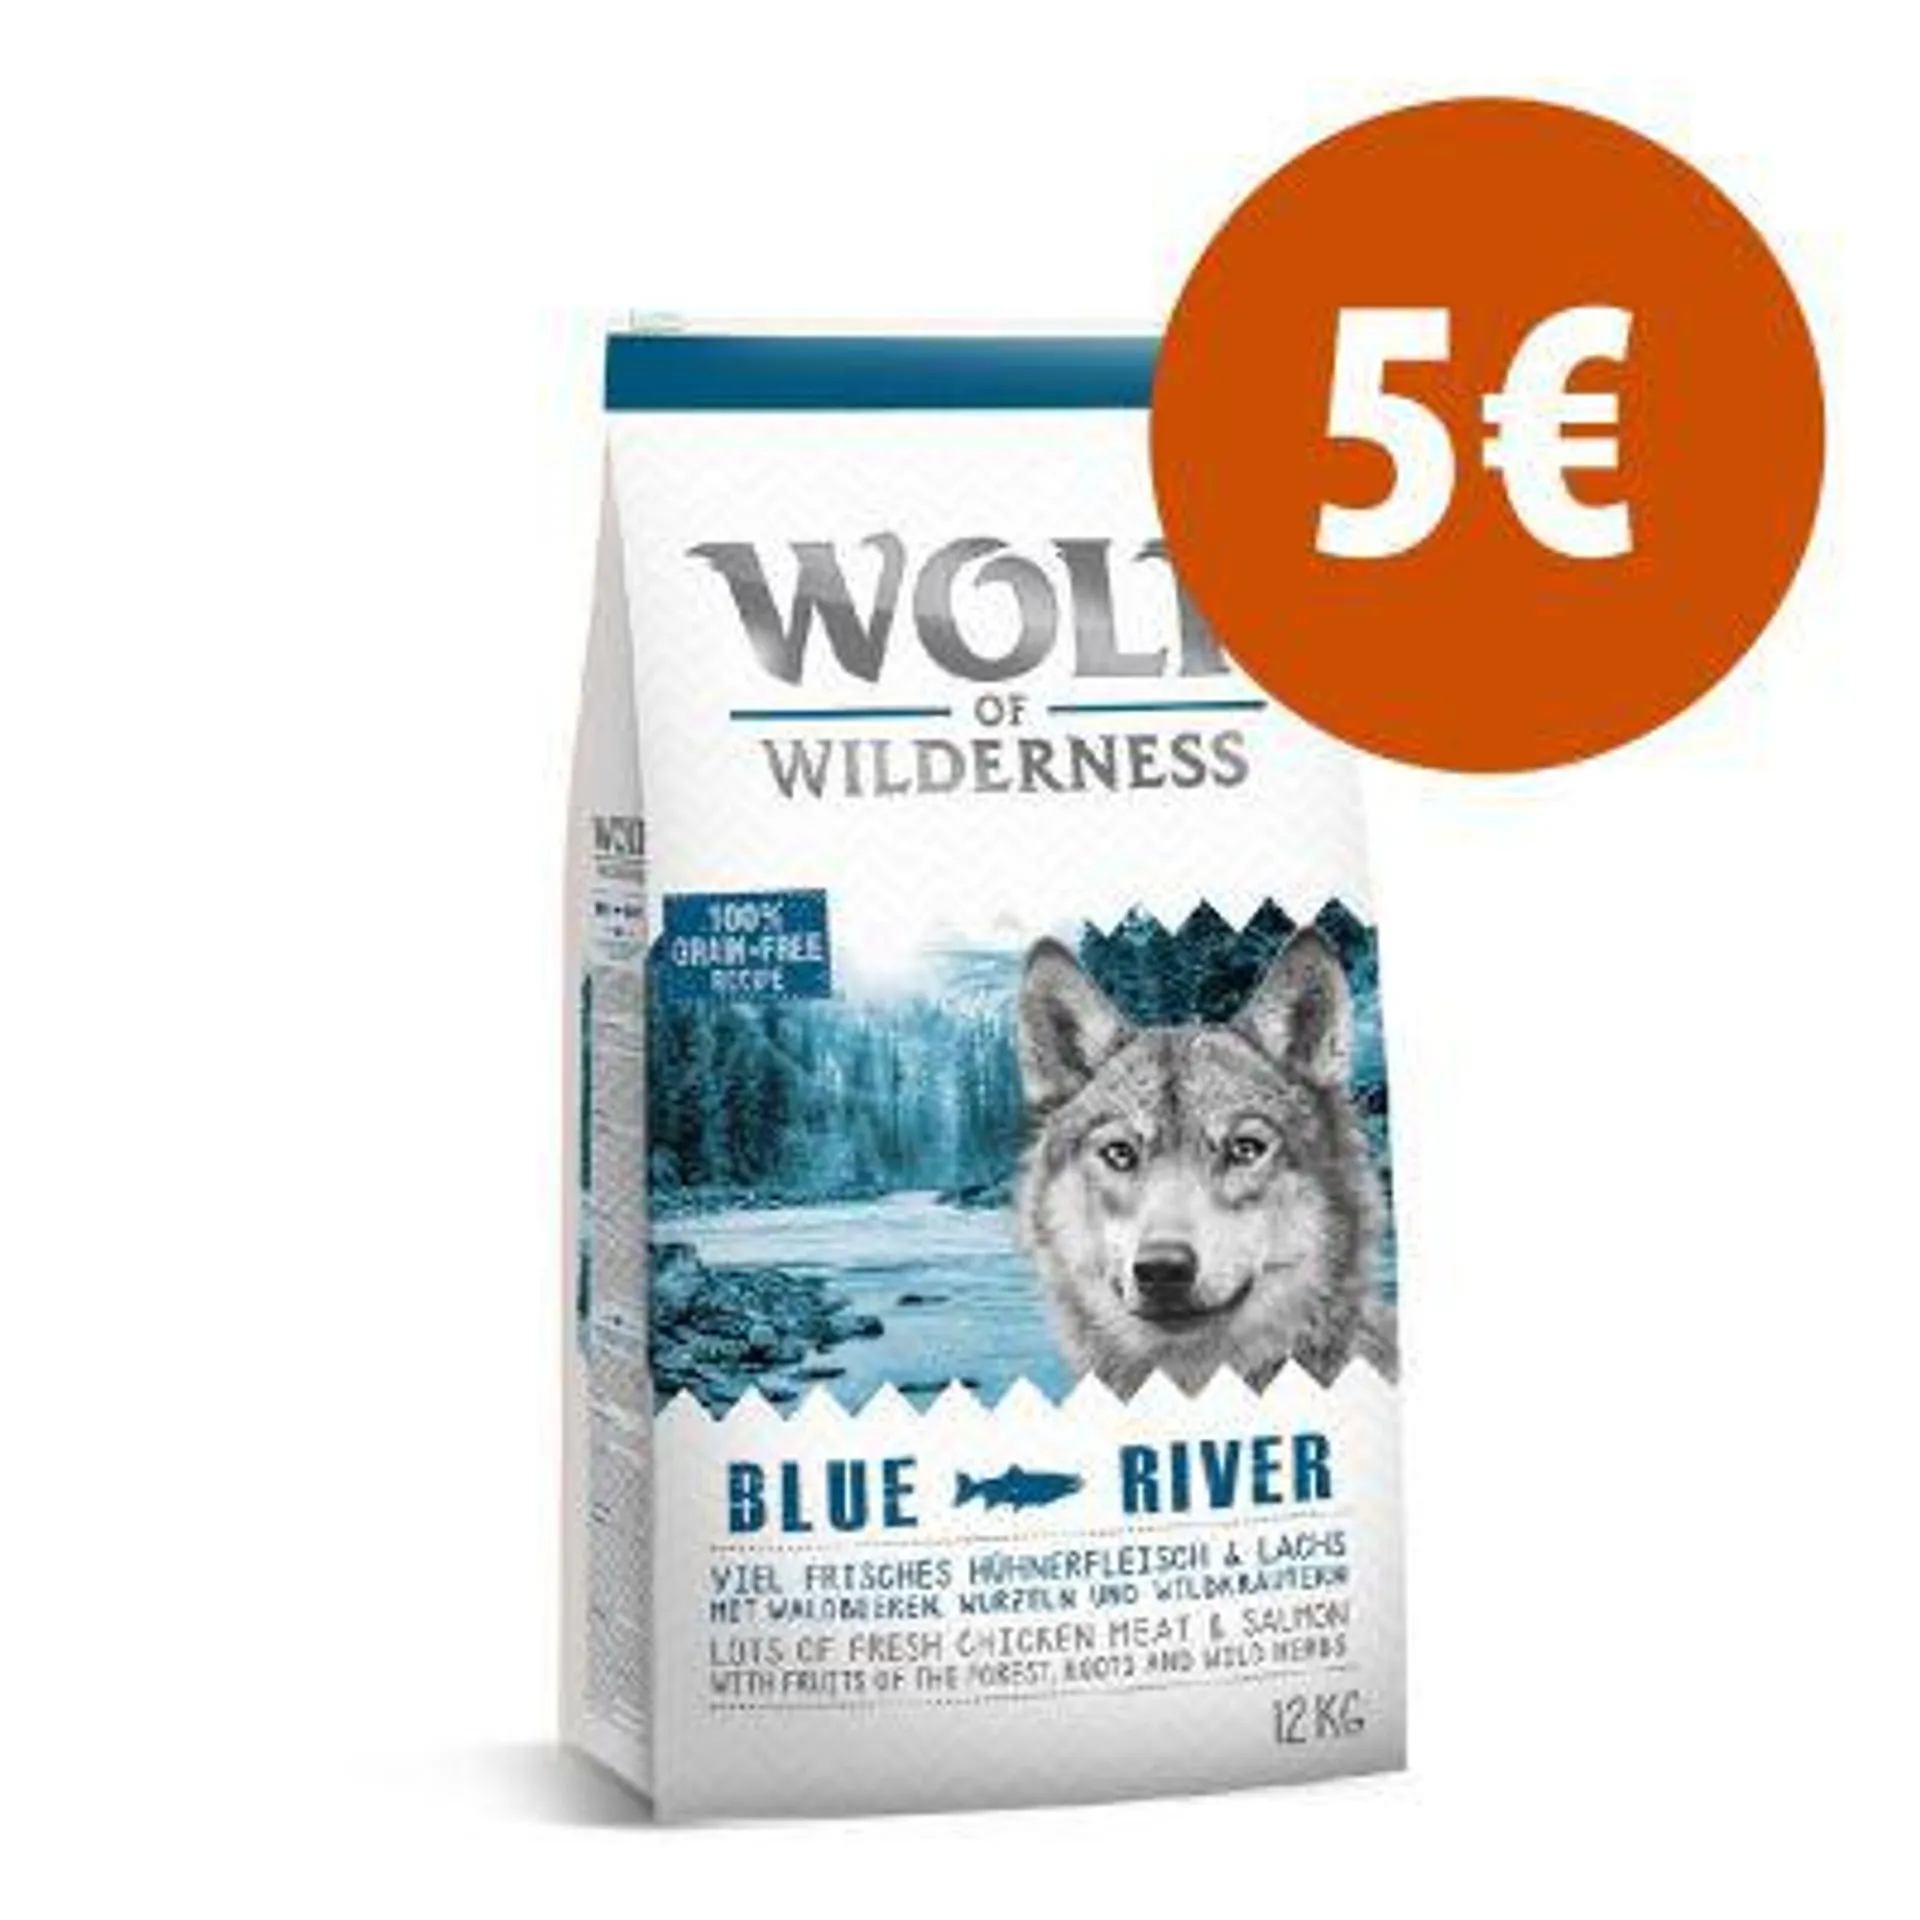 Wolf of Wilderness 12 kg ração para cães com 5 € de desconto!